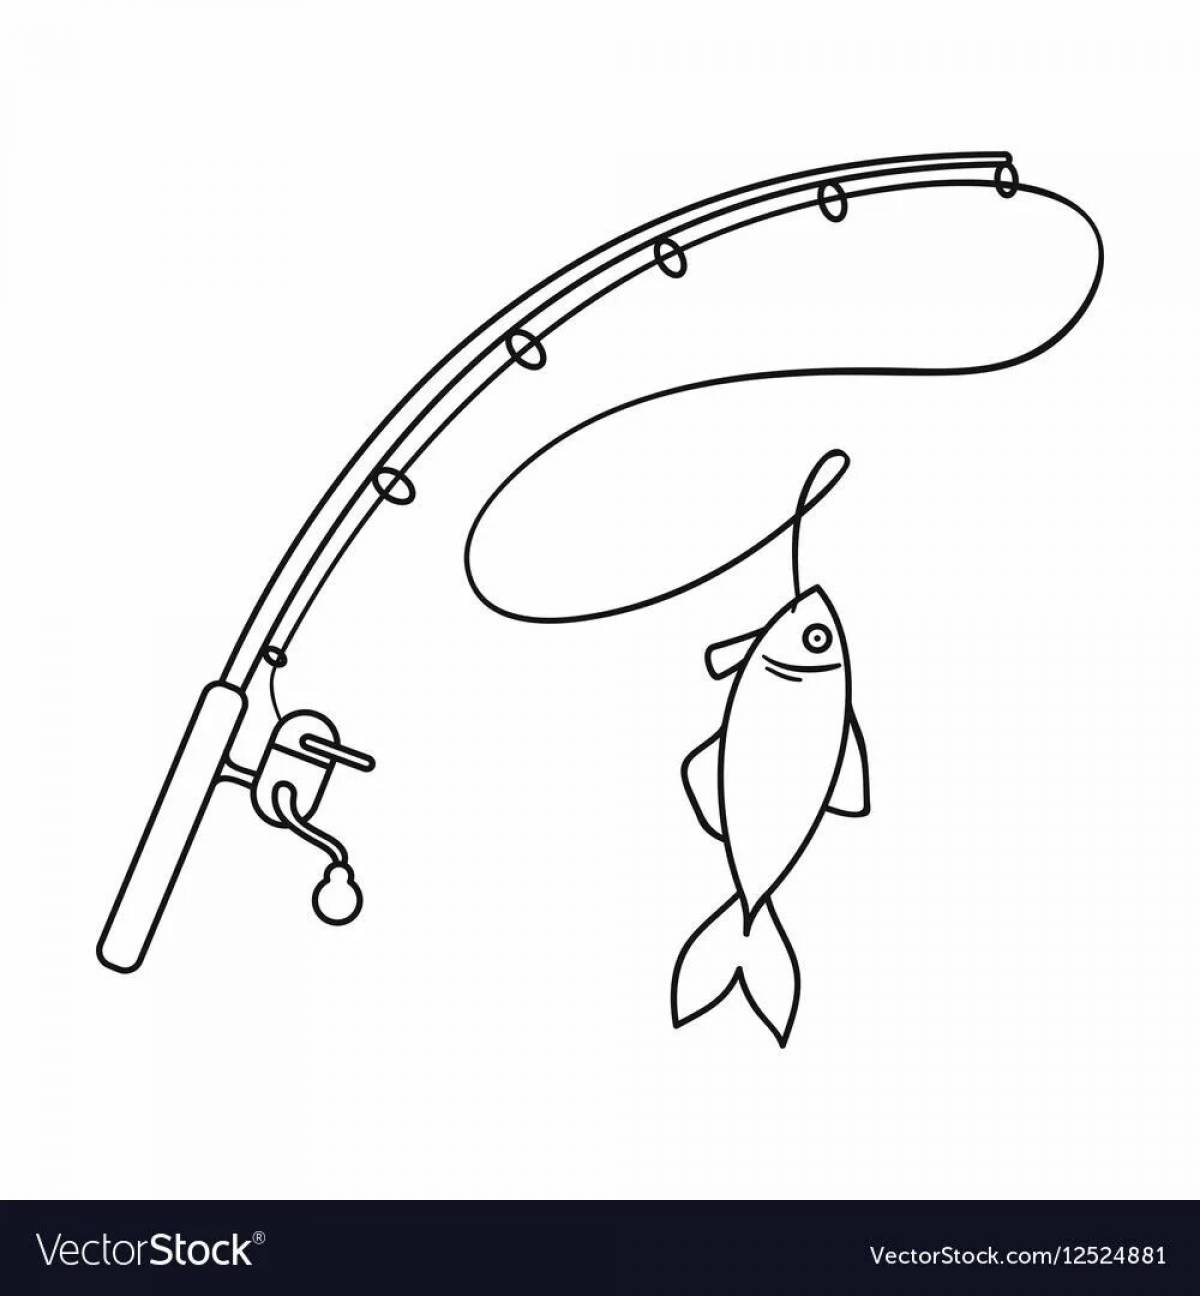 Children's fishing rod #21